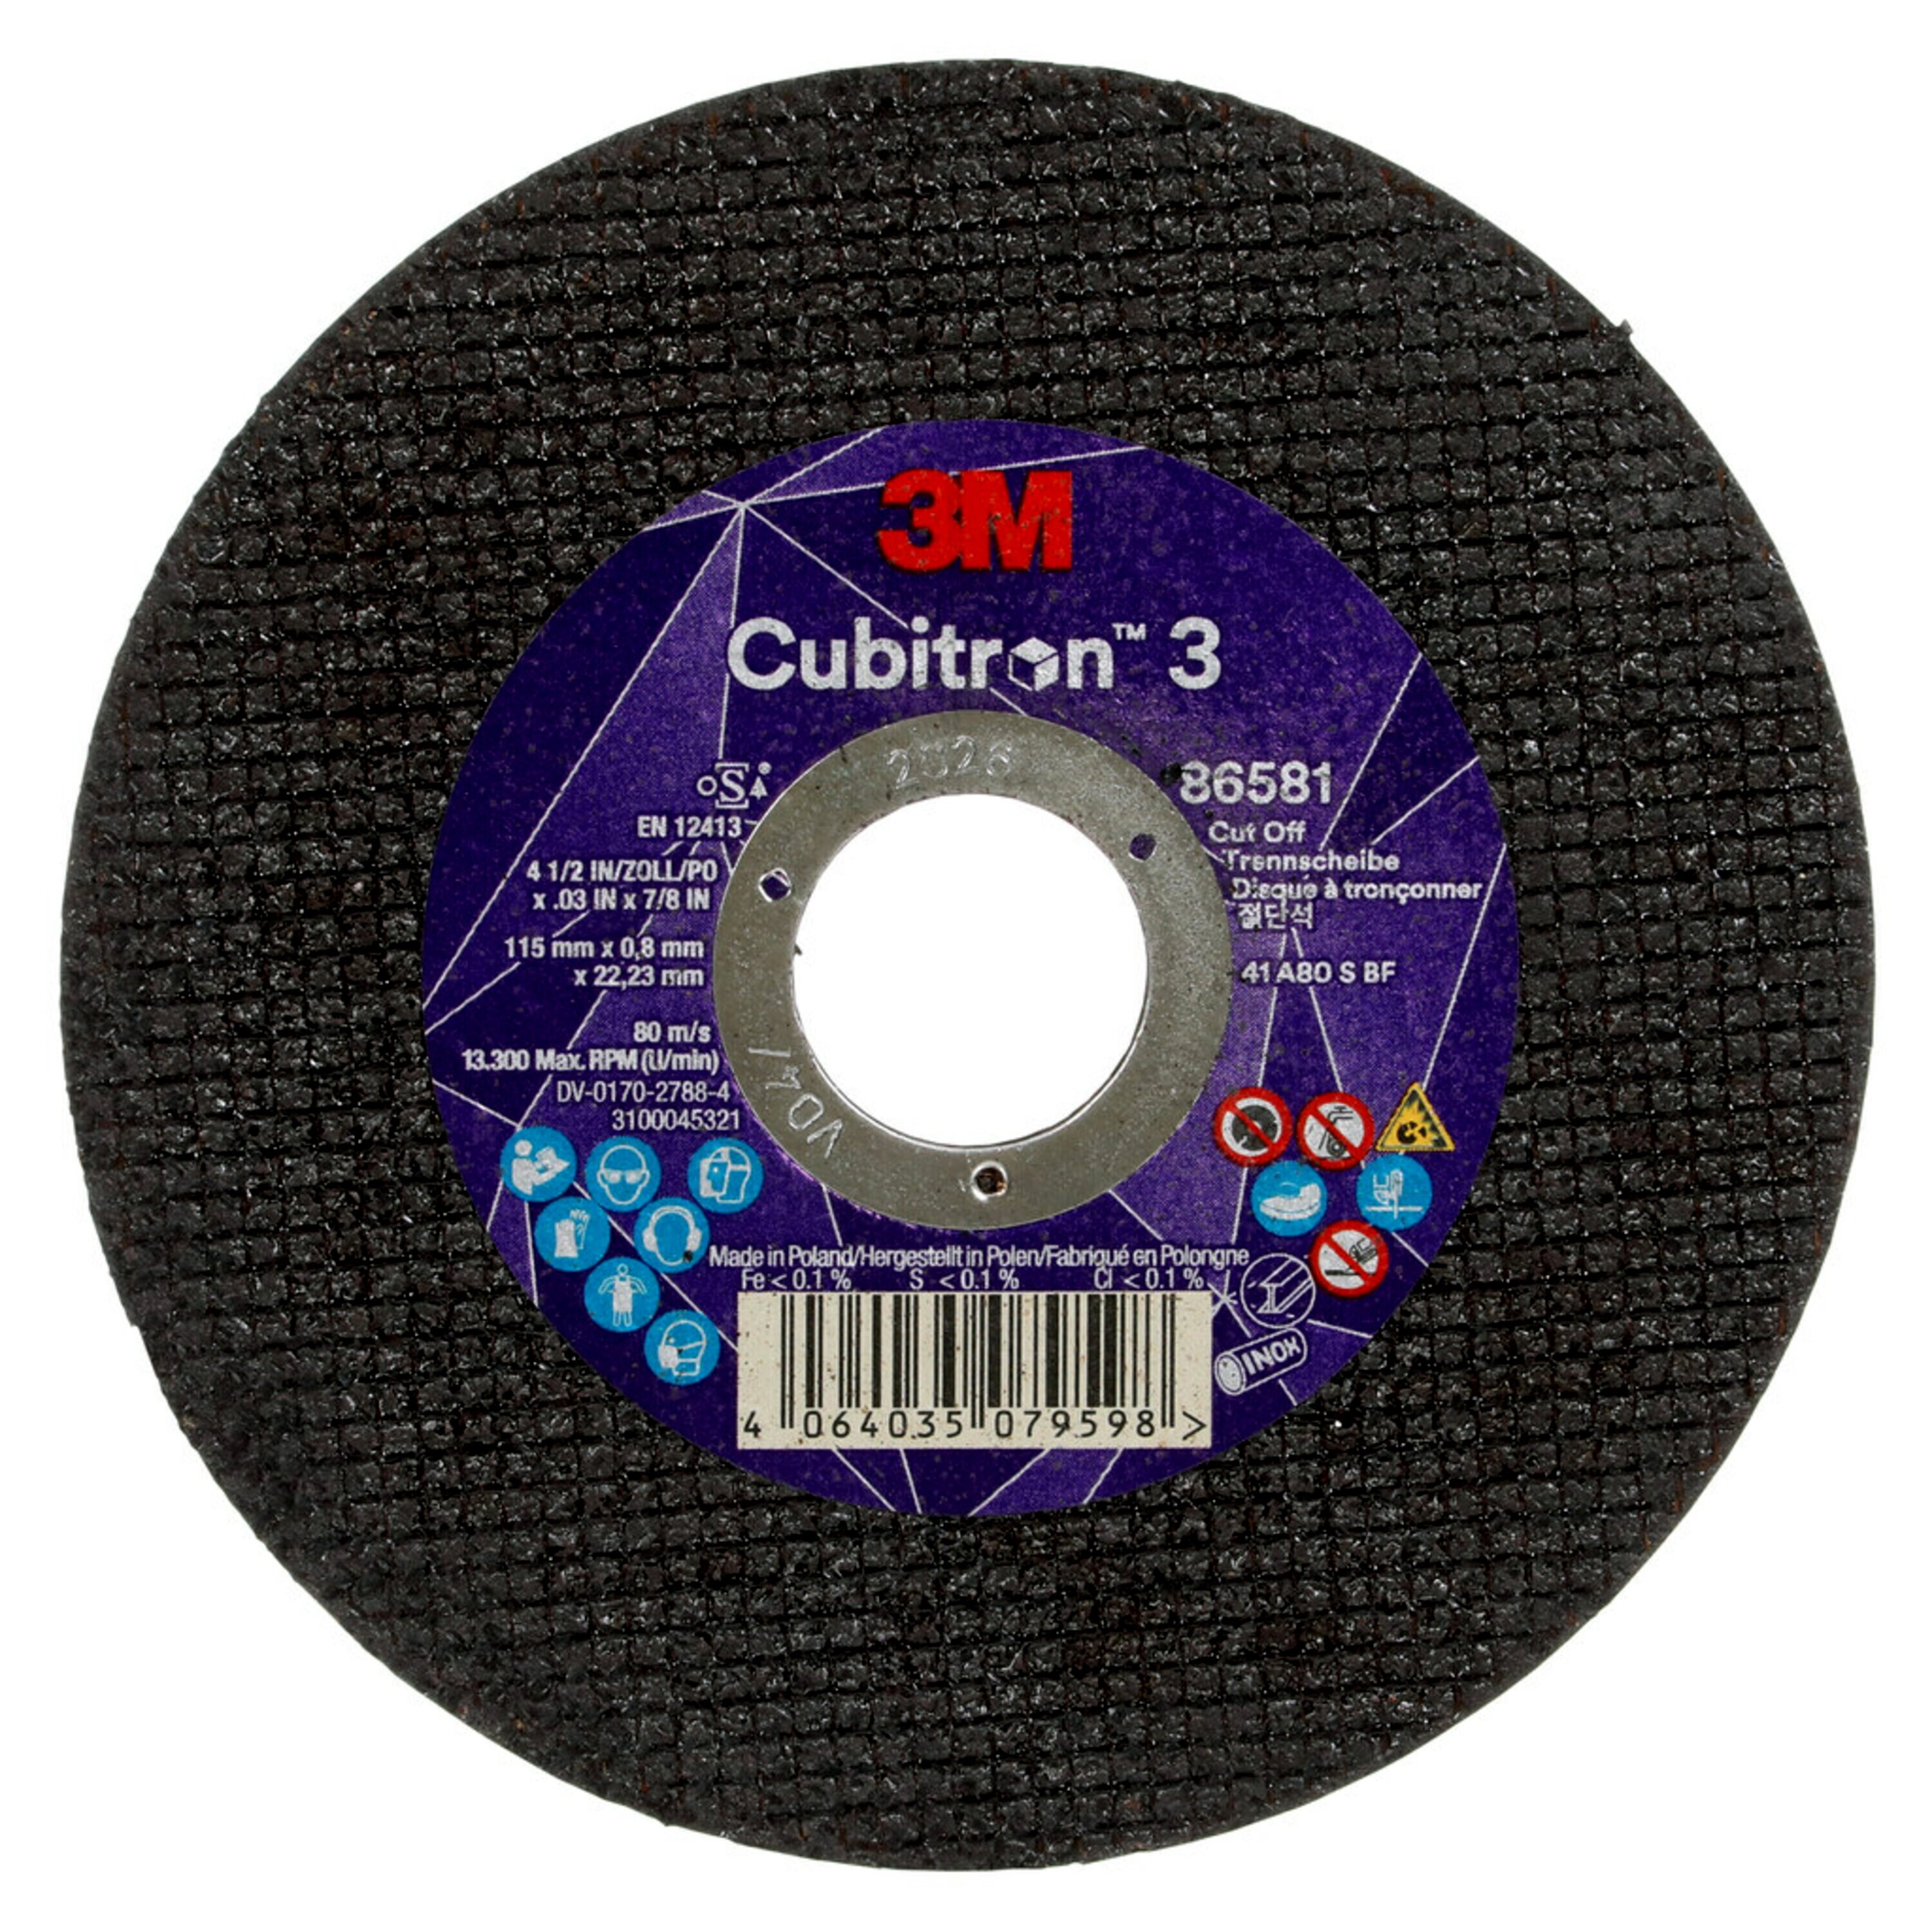 3M Cubitron 3 disco da taglio, 115 mm, 0,80 mm, 22,23 mm, 80 , tipo 41 #86581